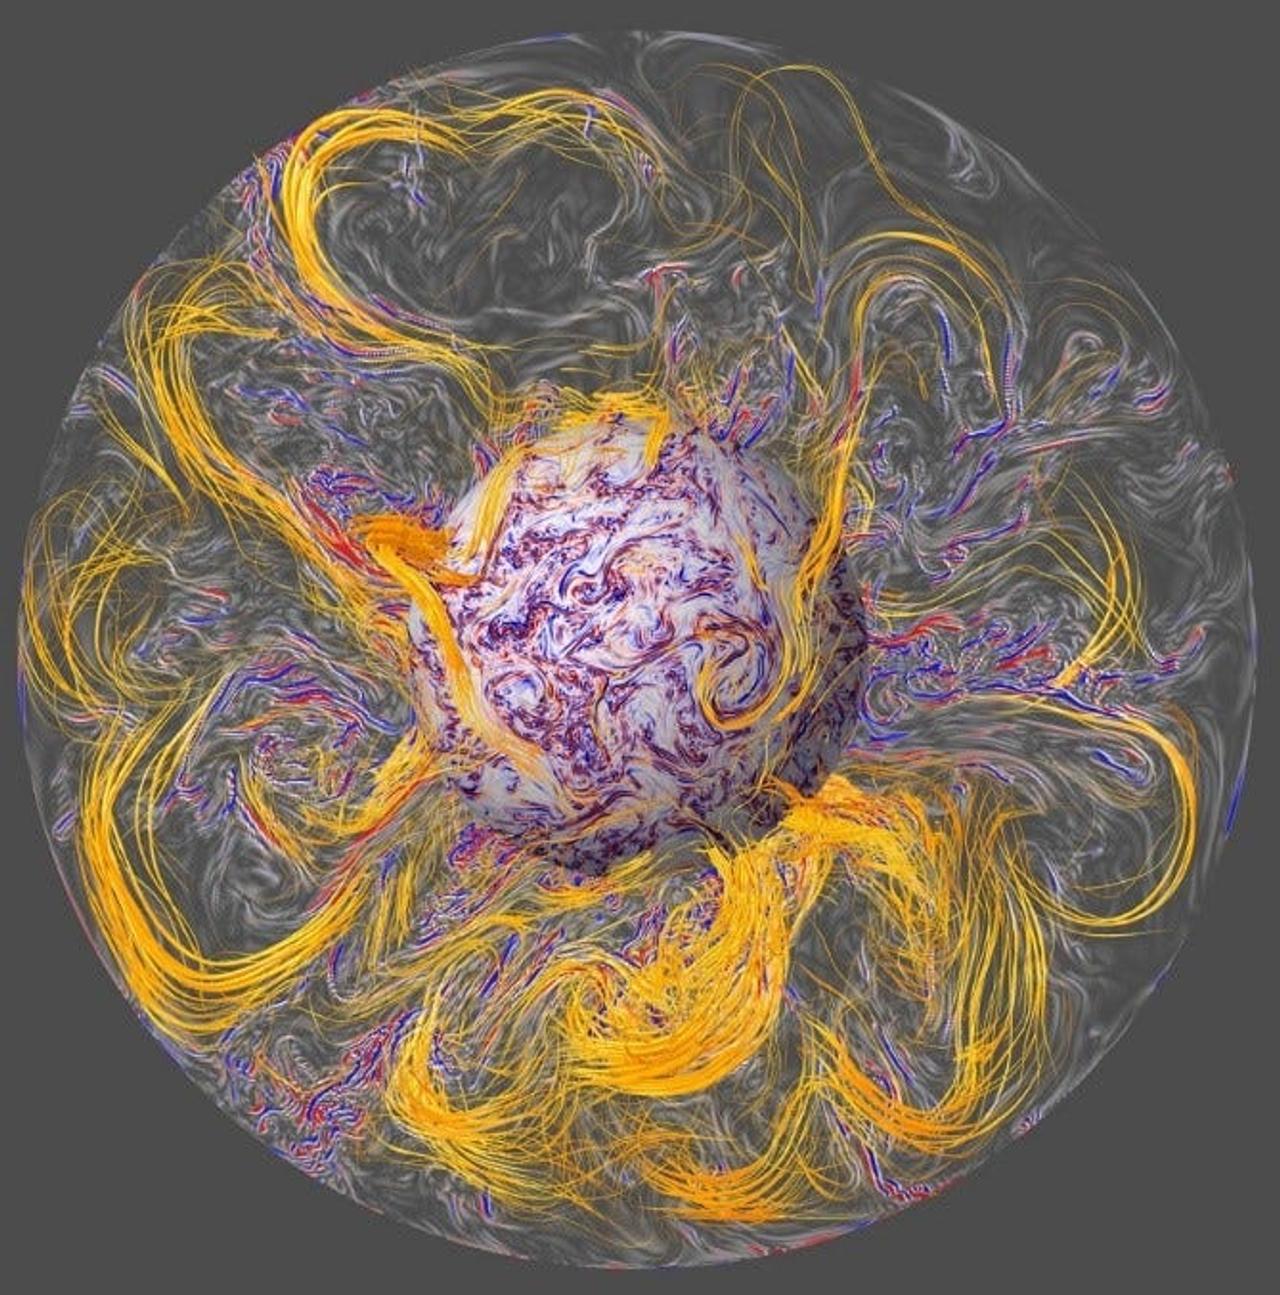 コンピューターモデルによって描かれた地球のコア内部の想像図。